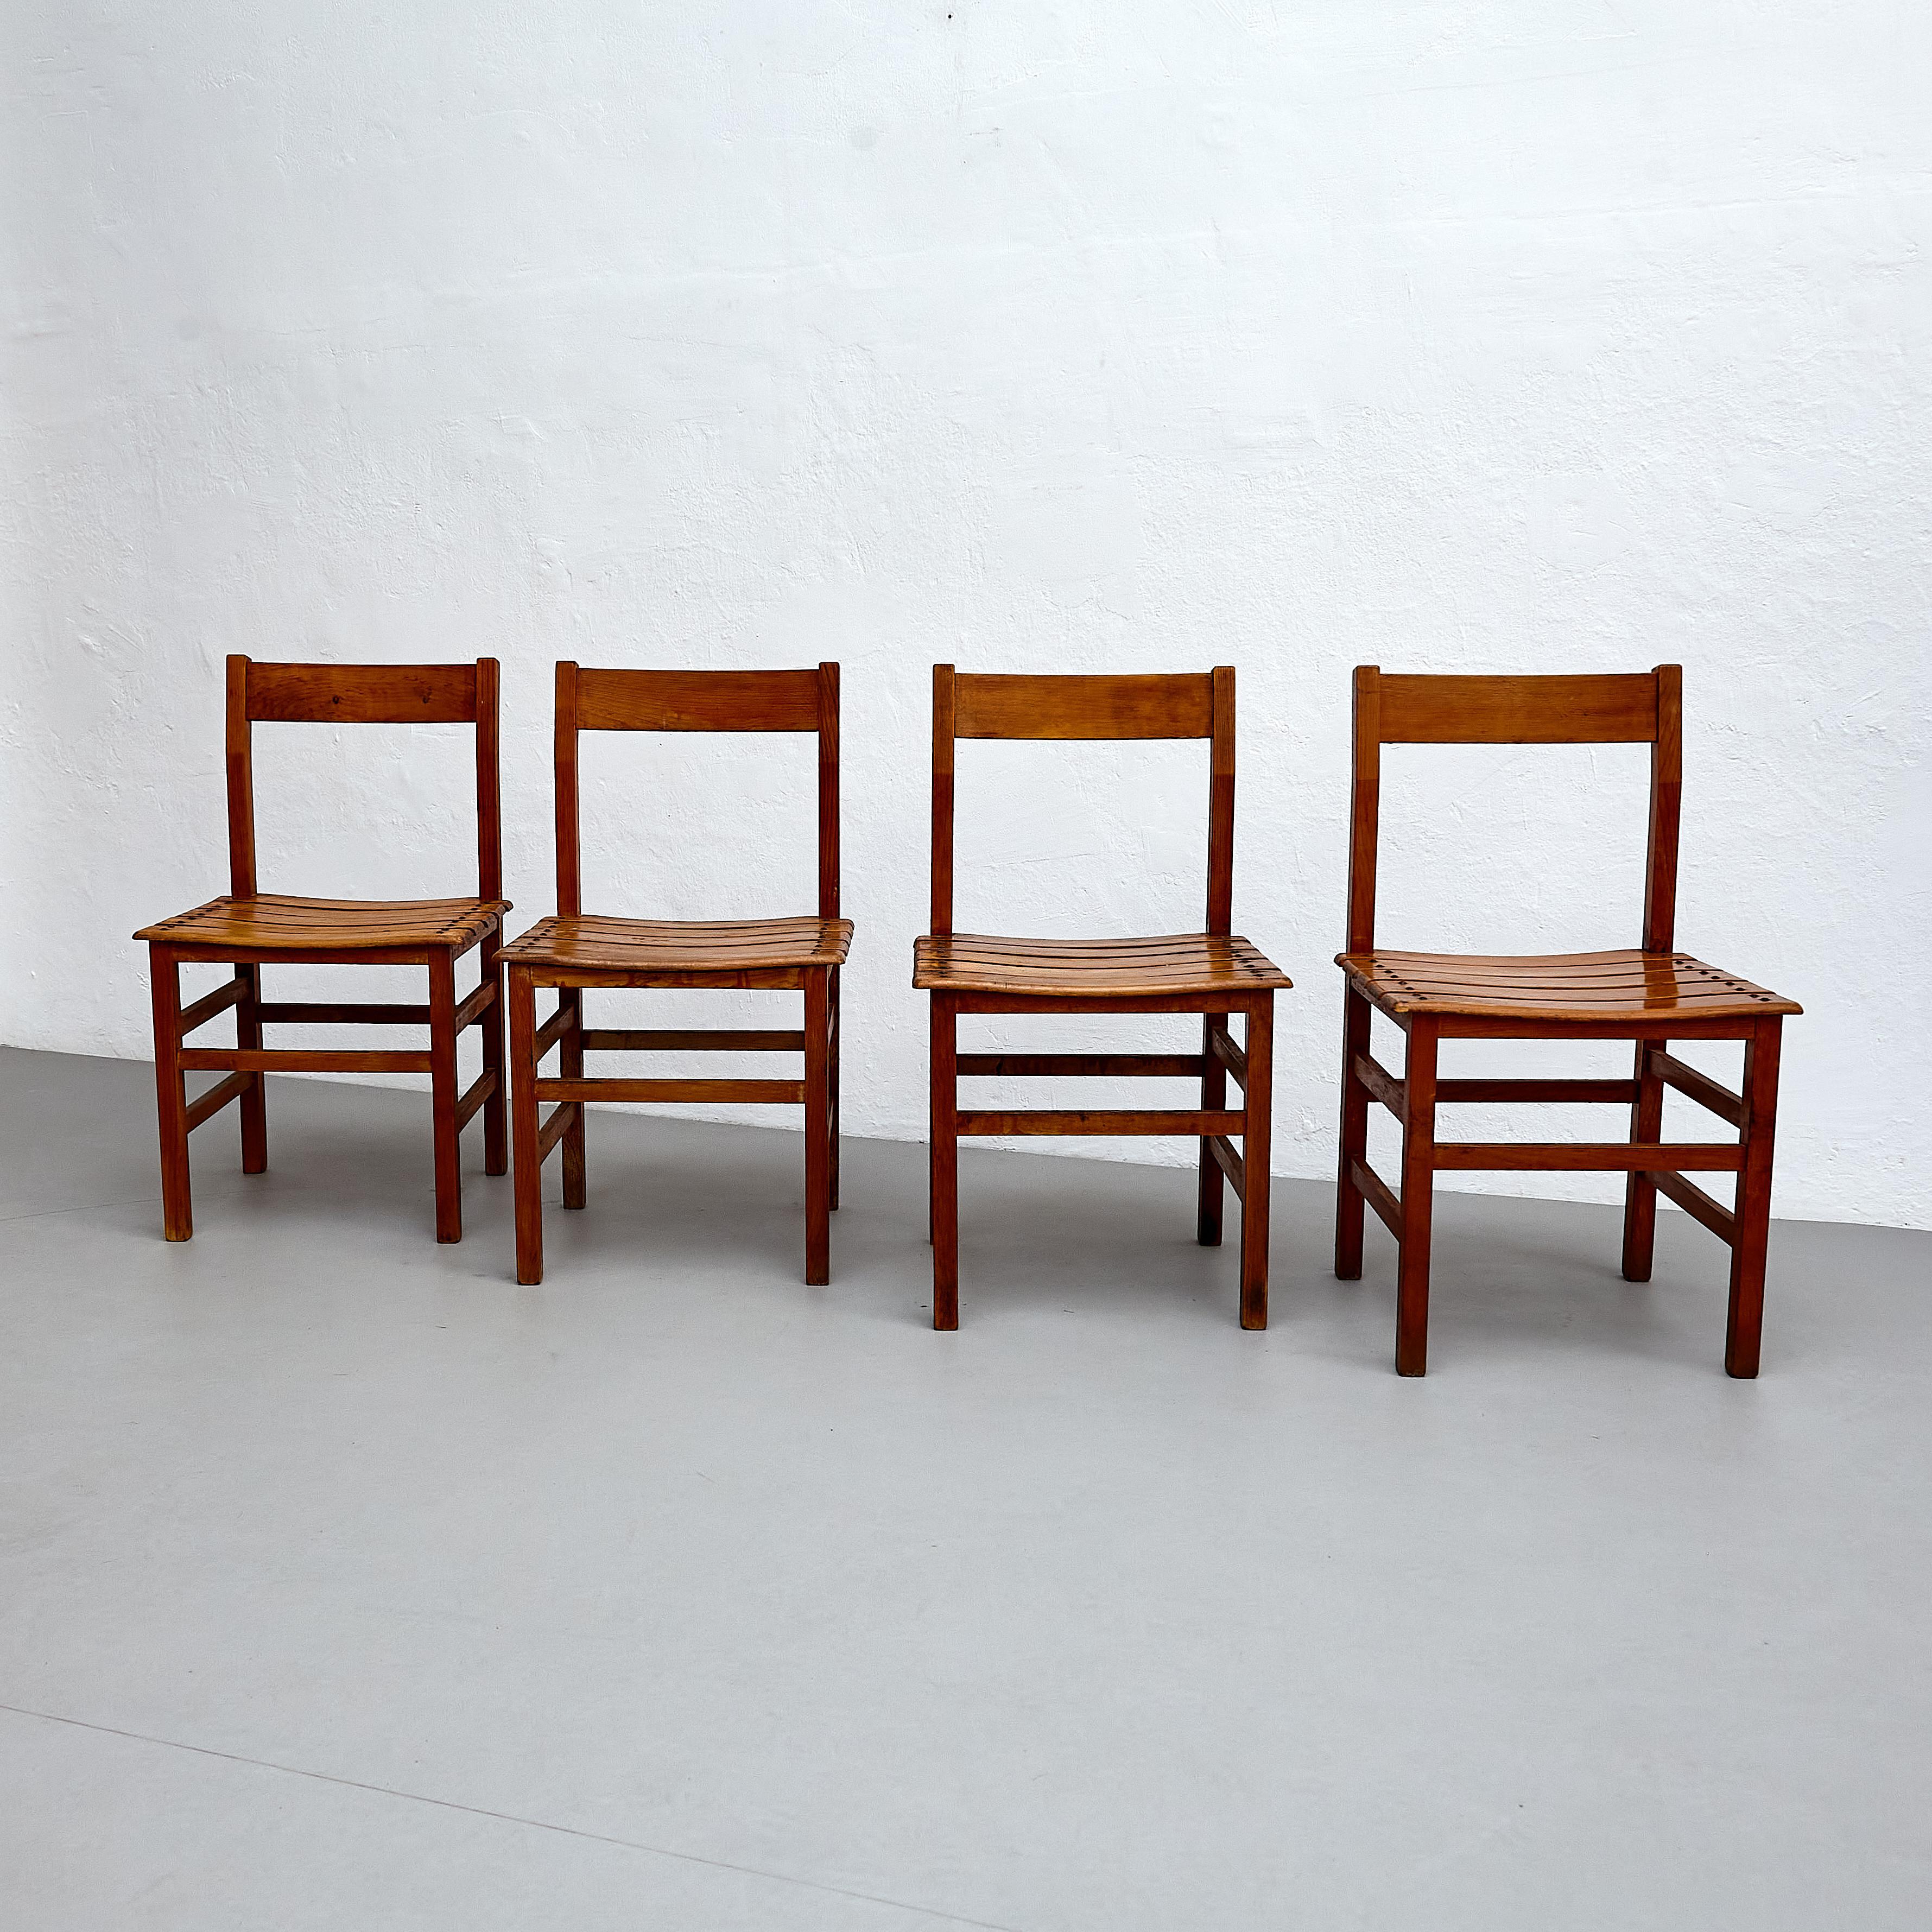 Ensemble de quatre chaises françaises en bois rustique.

Embrassez le charme rustique de cet ensemble de quatre chaises en bois rationaliste du milieu du siècle dernier, fabriquées en France vers 1960. Ces chaises présentent un design intemporel, ce